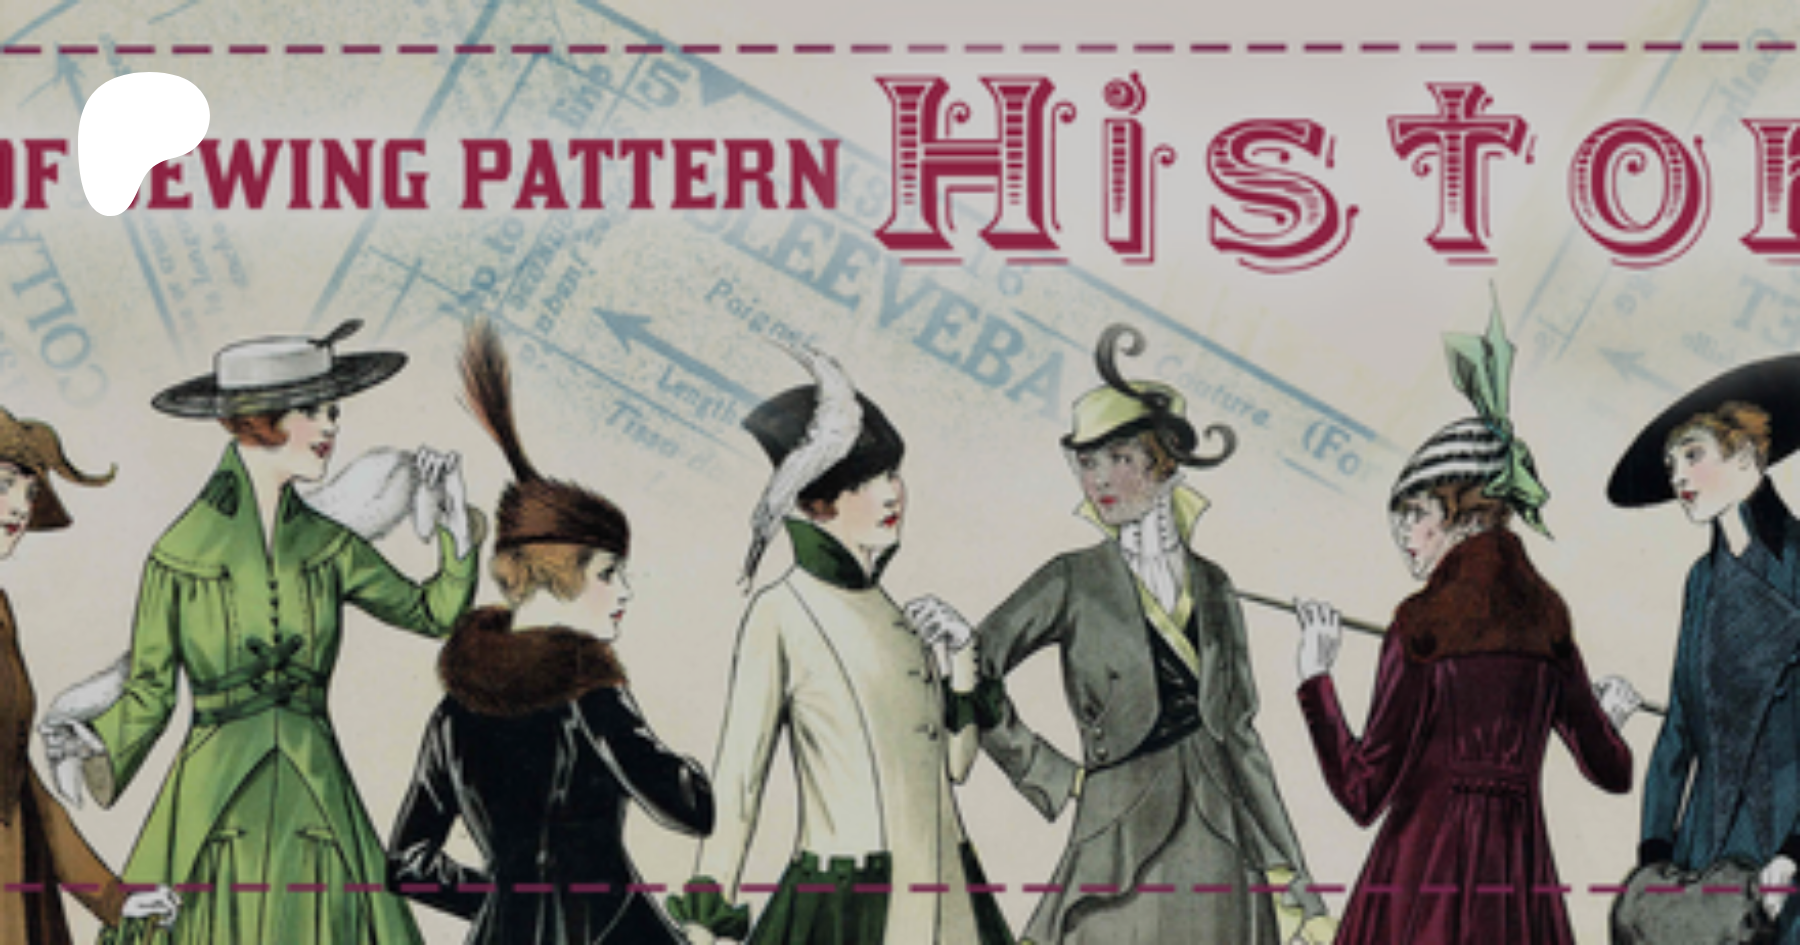 Vintage Sewing Pattern Ladies 1910s 1920s Style Brassiere